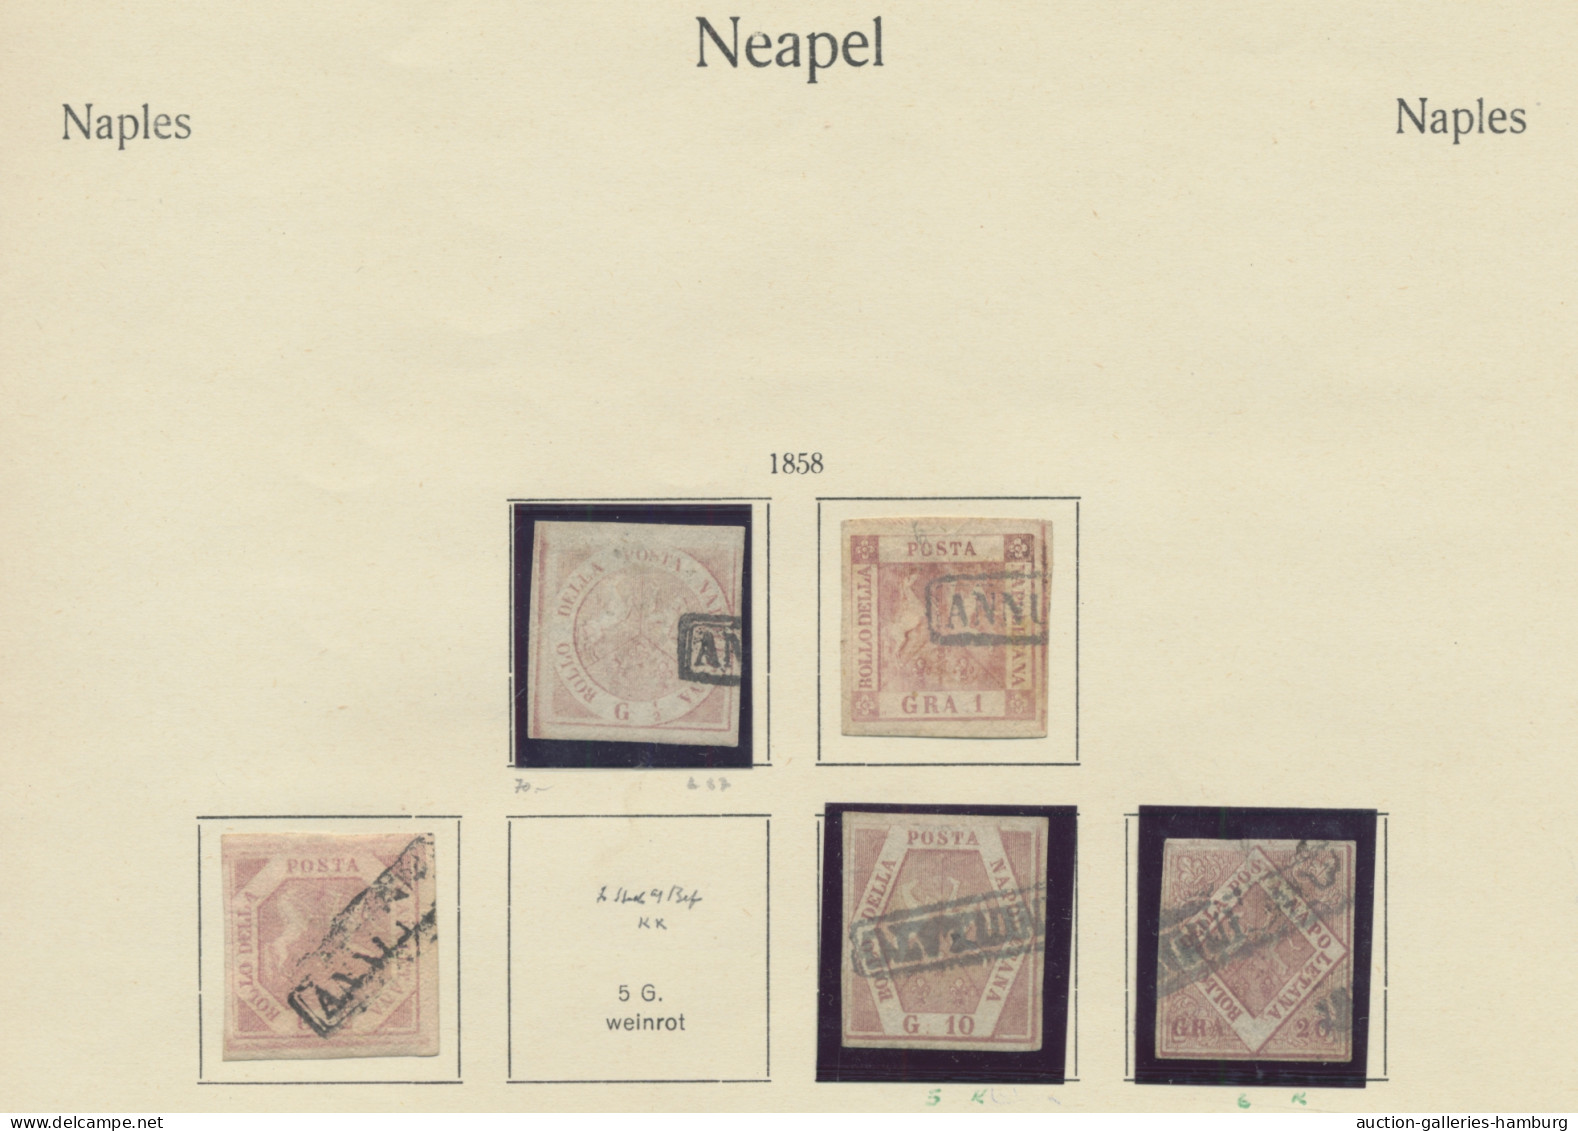 Italian States: 1851-1863, alte Sammlung, relativ schmucklos auf alten KABE-Vord